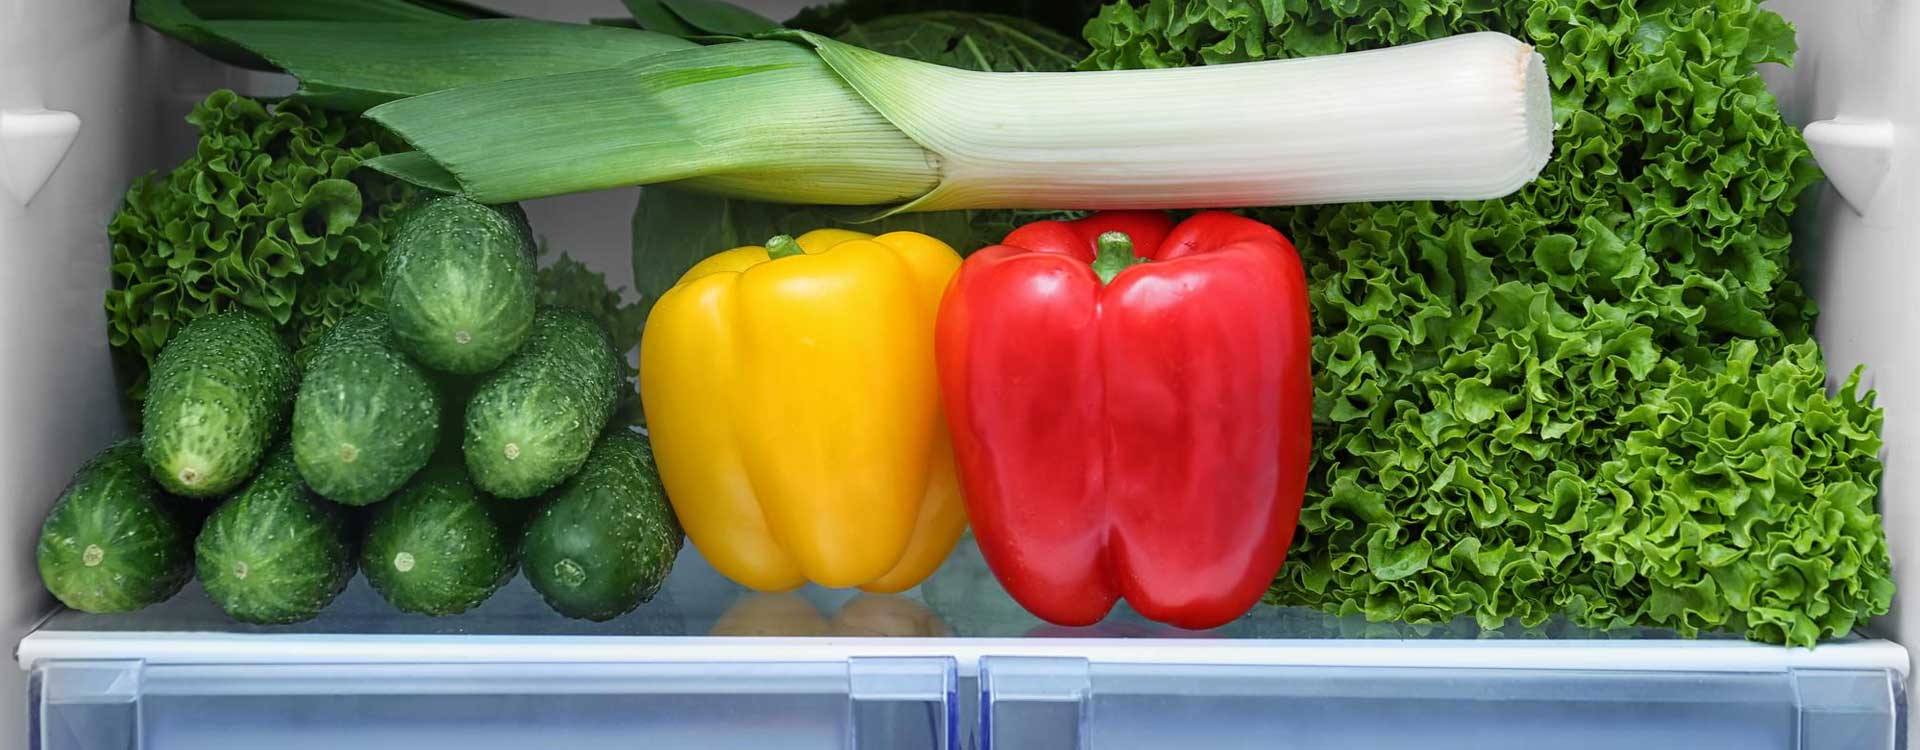 Obst und Gemüse richtig lagern: Iim Kühlschrank oder bei Zimmertemperatur?